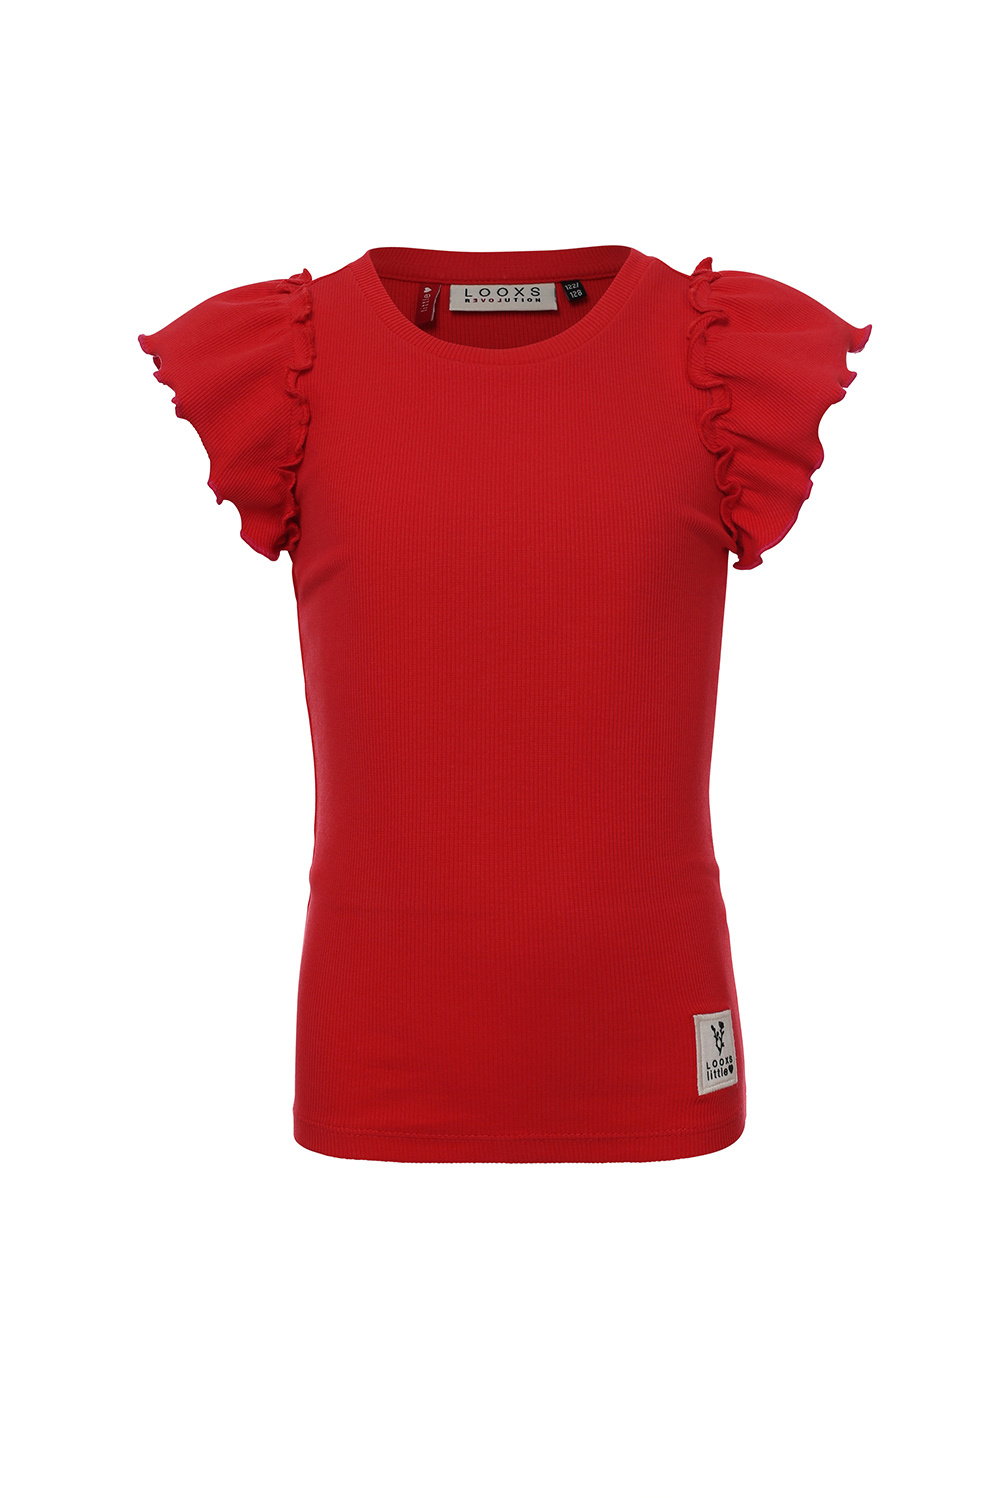 Looxs Revolution 2312-7476-264 Meisjes Shirt - Maat 104 - Roze van Katoen